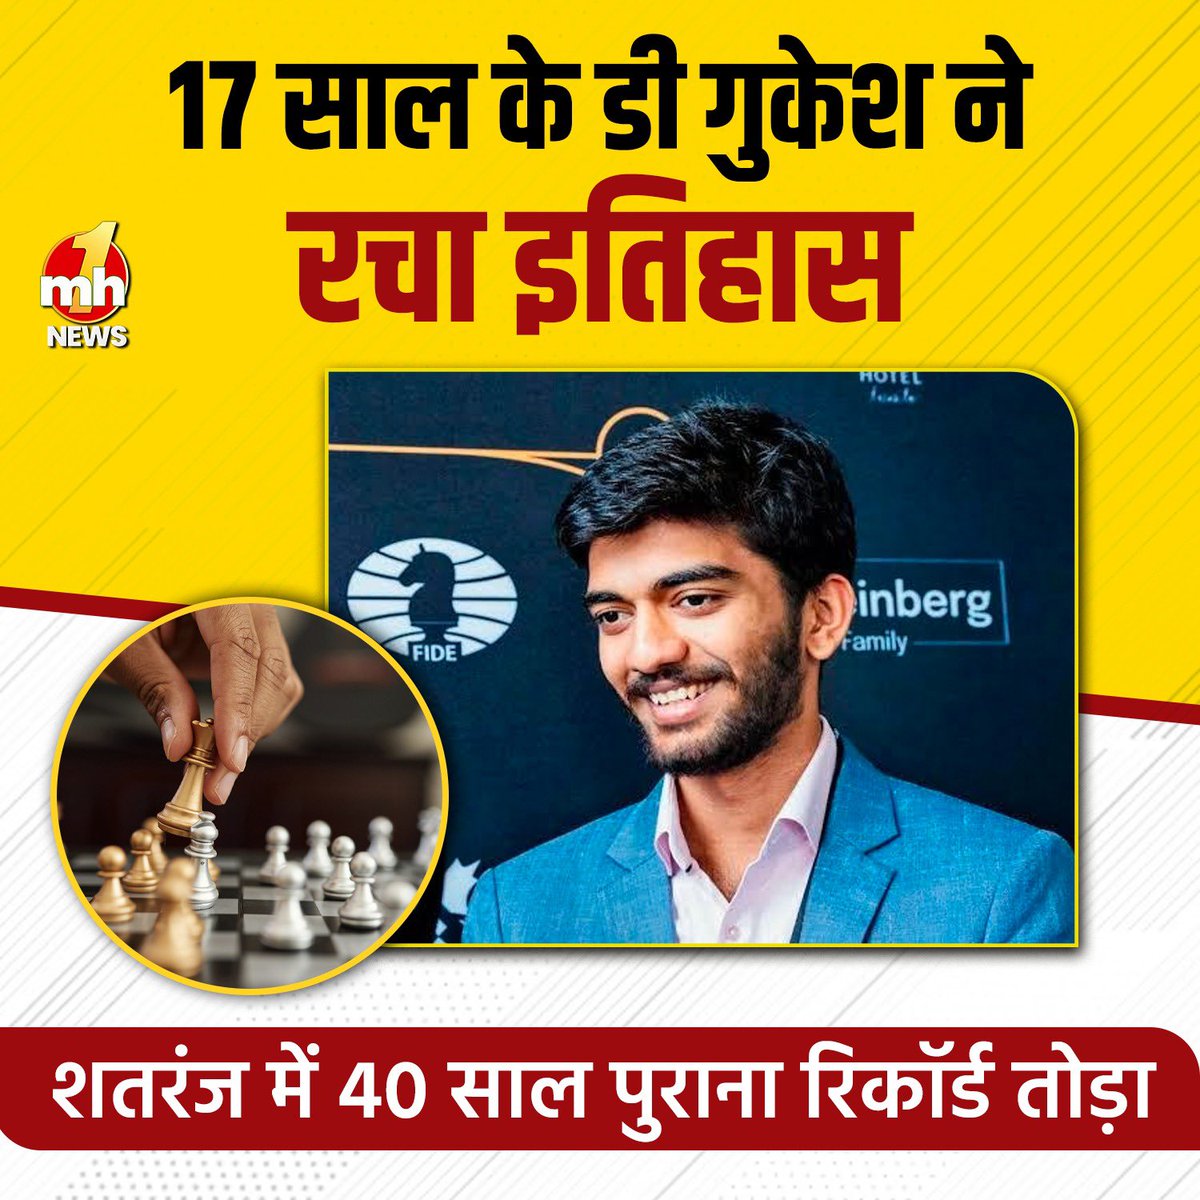 भारत के 17 वर्षीय ग्रैंडमास्‍टर डी गुकेश ने कैंडीडेट्स शतरंज टूर्नामेंट में इतिहास रच दिया। गुकेश विश्‍व खिताब जीतने वाले सबसे युवा चैलेंजर बने। भारतीय ग्रैंडमास्‍टर ने दिग्‍गज गैरी कास्‍पारोव के 40 साल पुराने रिकॉर्ड को बेहतर किया। #grandmaster #chessbaseindia